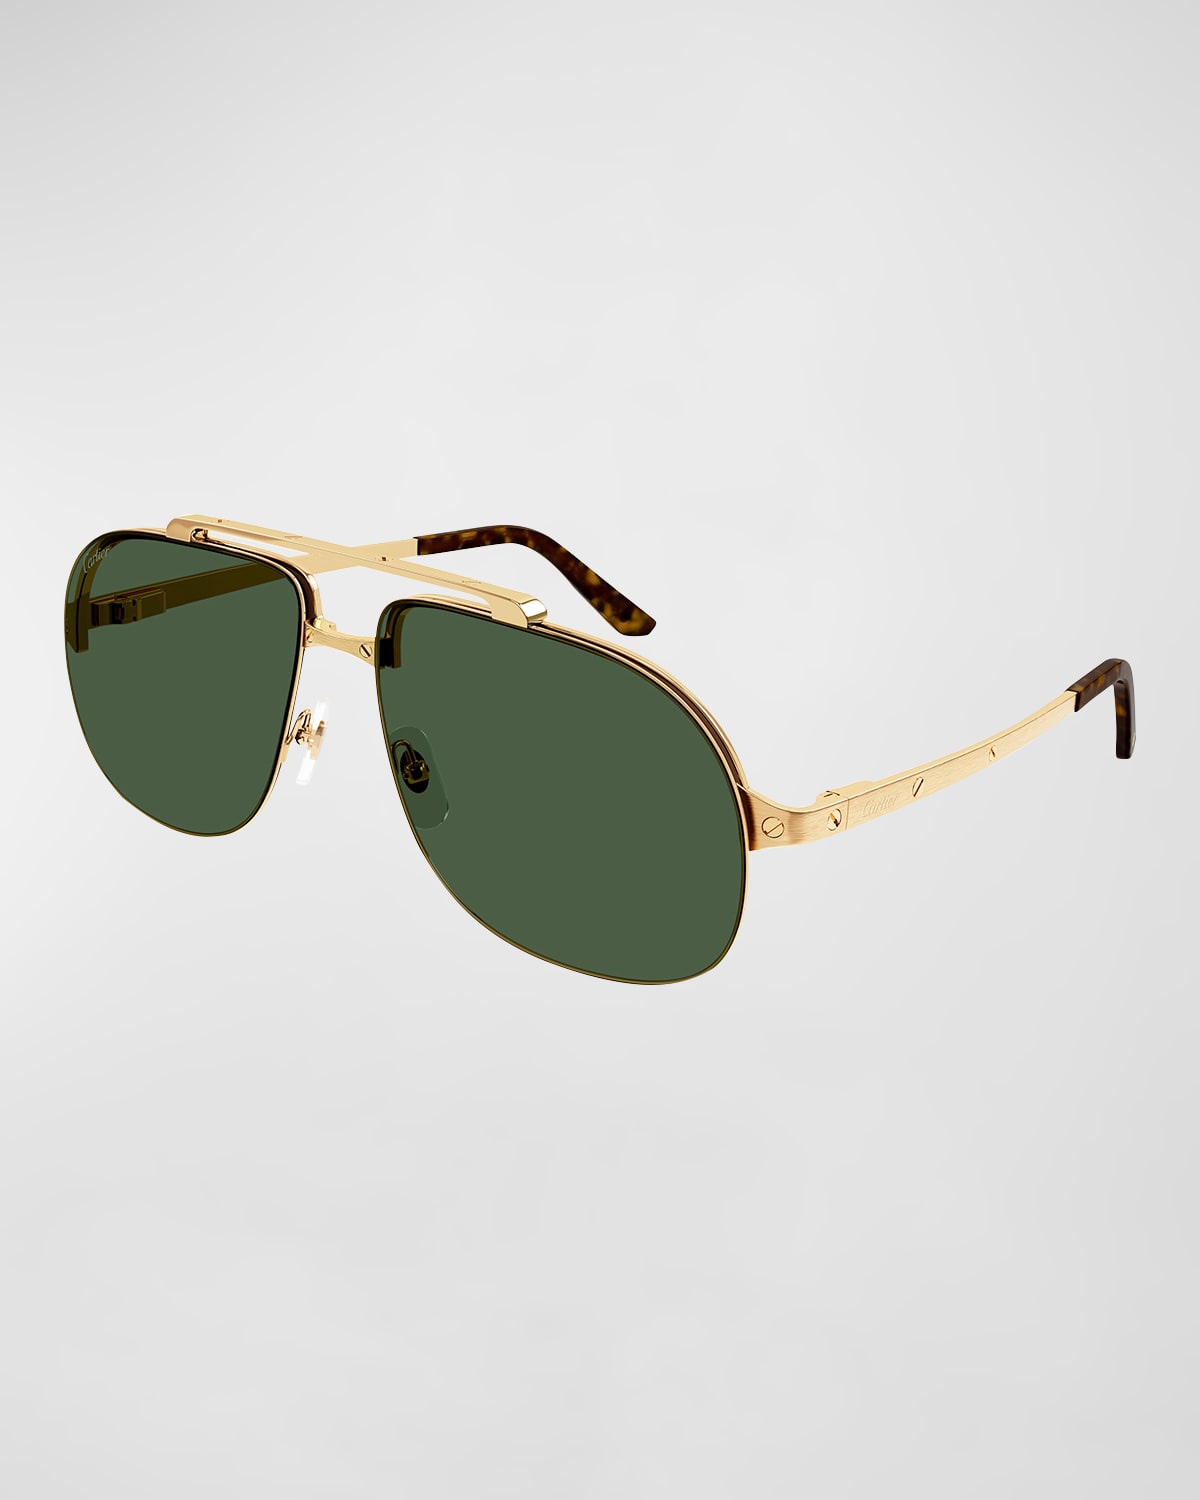 Cartier Men's Double-bridge Metal Aviator Sunglasses In Gold